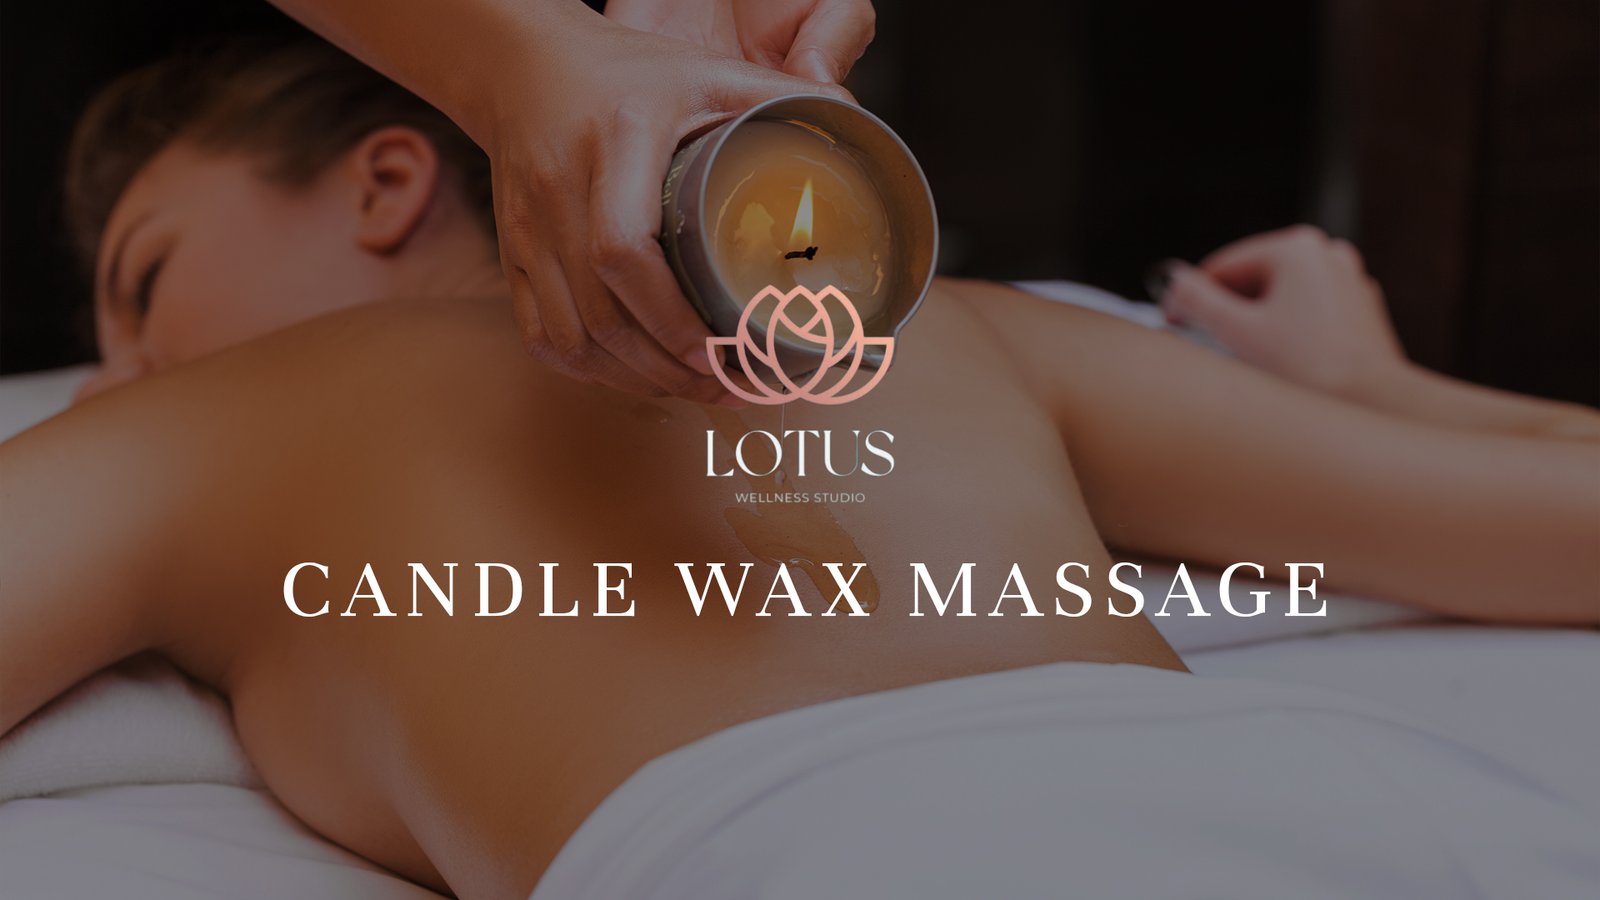 11. Candle Wax Massage